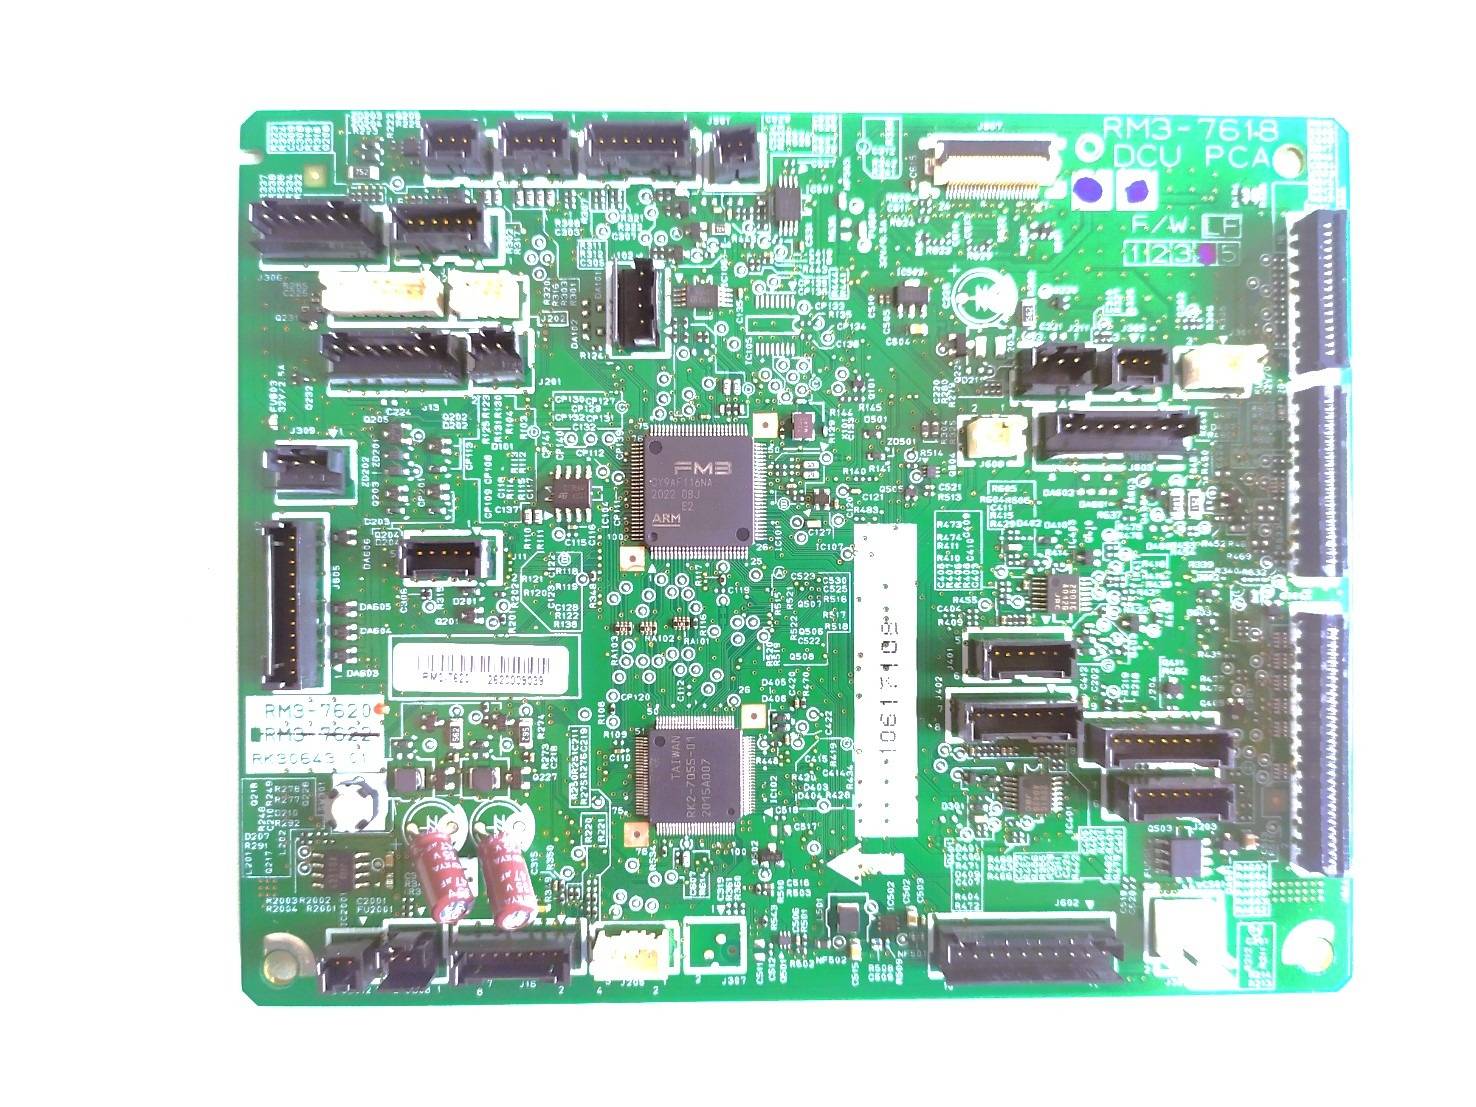 controlador-dc-impresora-hp-laserjet-managed-e60155-e60165-e60175-rm3-7620-quito-ecuador-idkmanager1.jpg